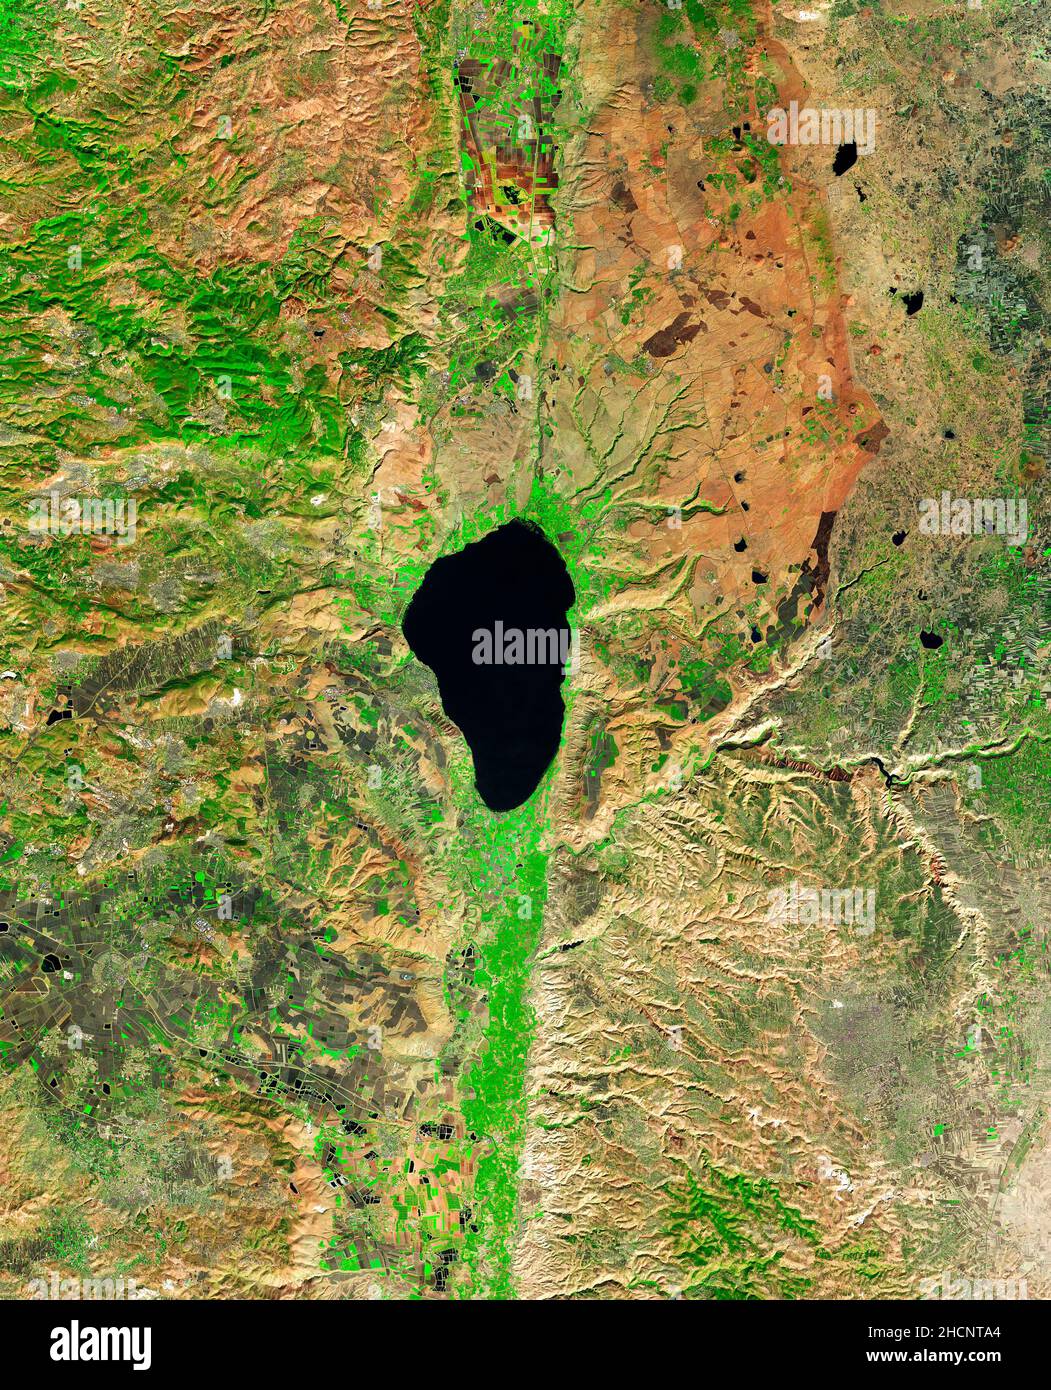 El Mar de Galilea en el norte de Israel, uno de los cuerpos de agua más bajos del mundo Foto de stock